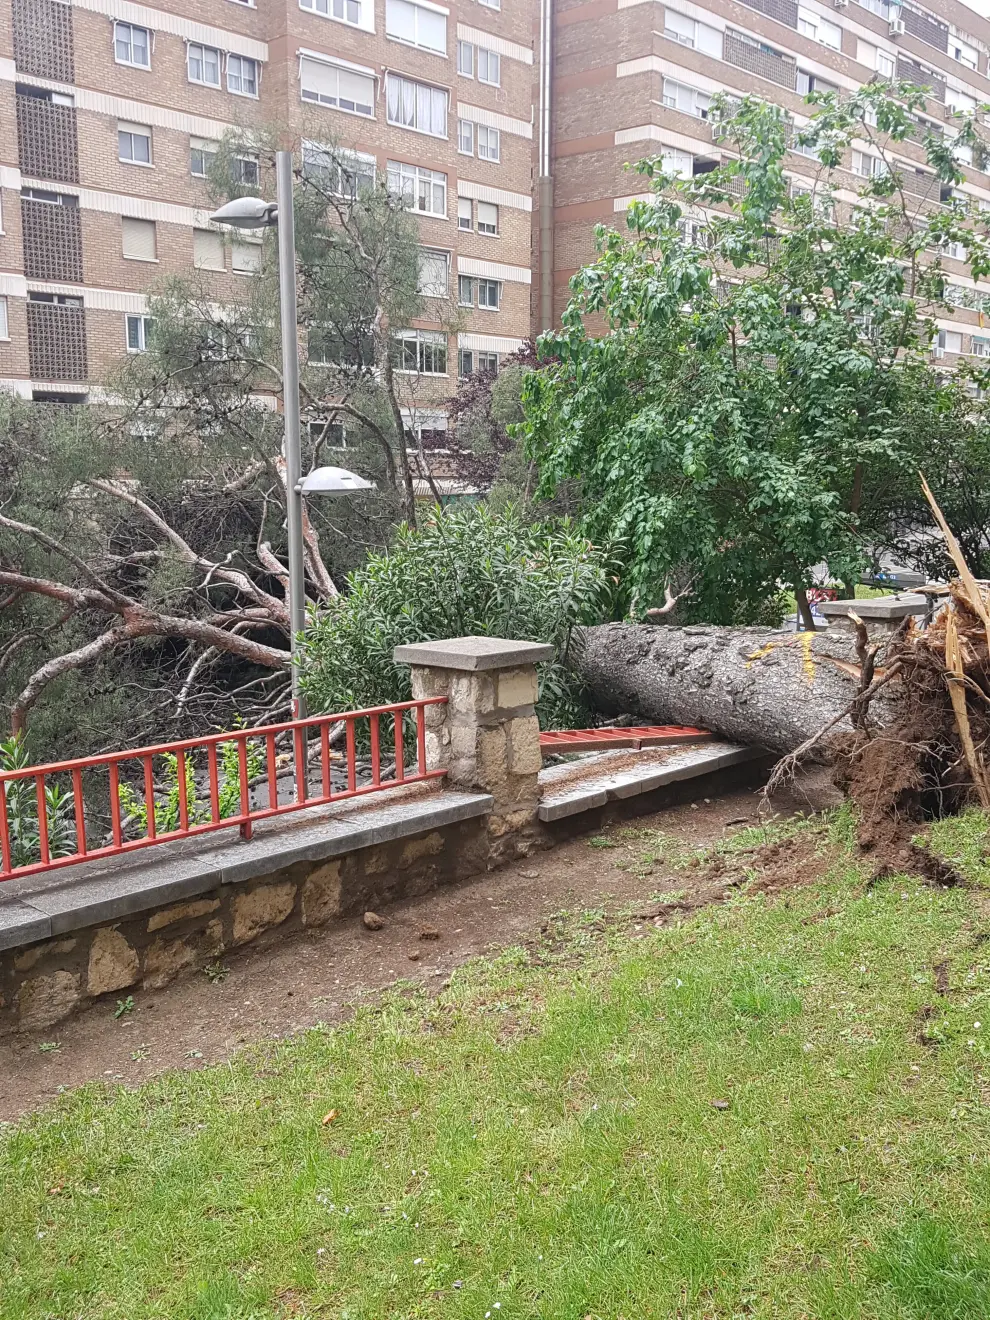 Cae un árbol de grandes dimensiones y obliga a cortar parte de la calle Rioja